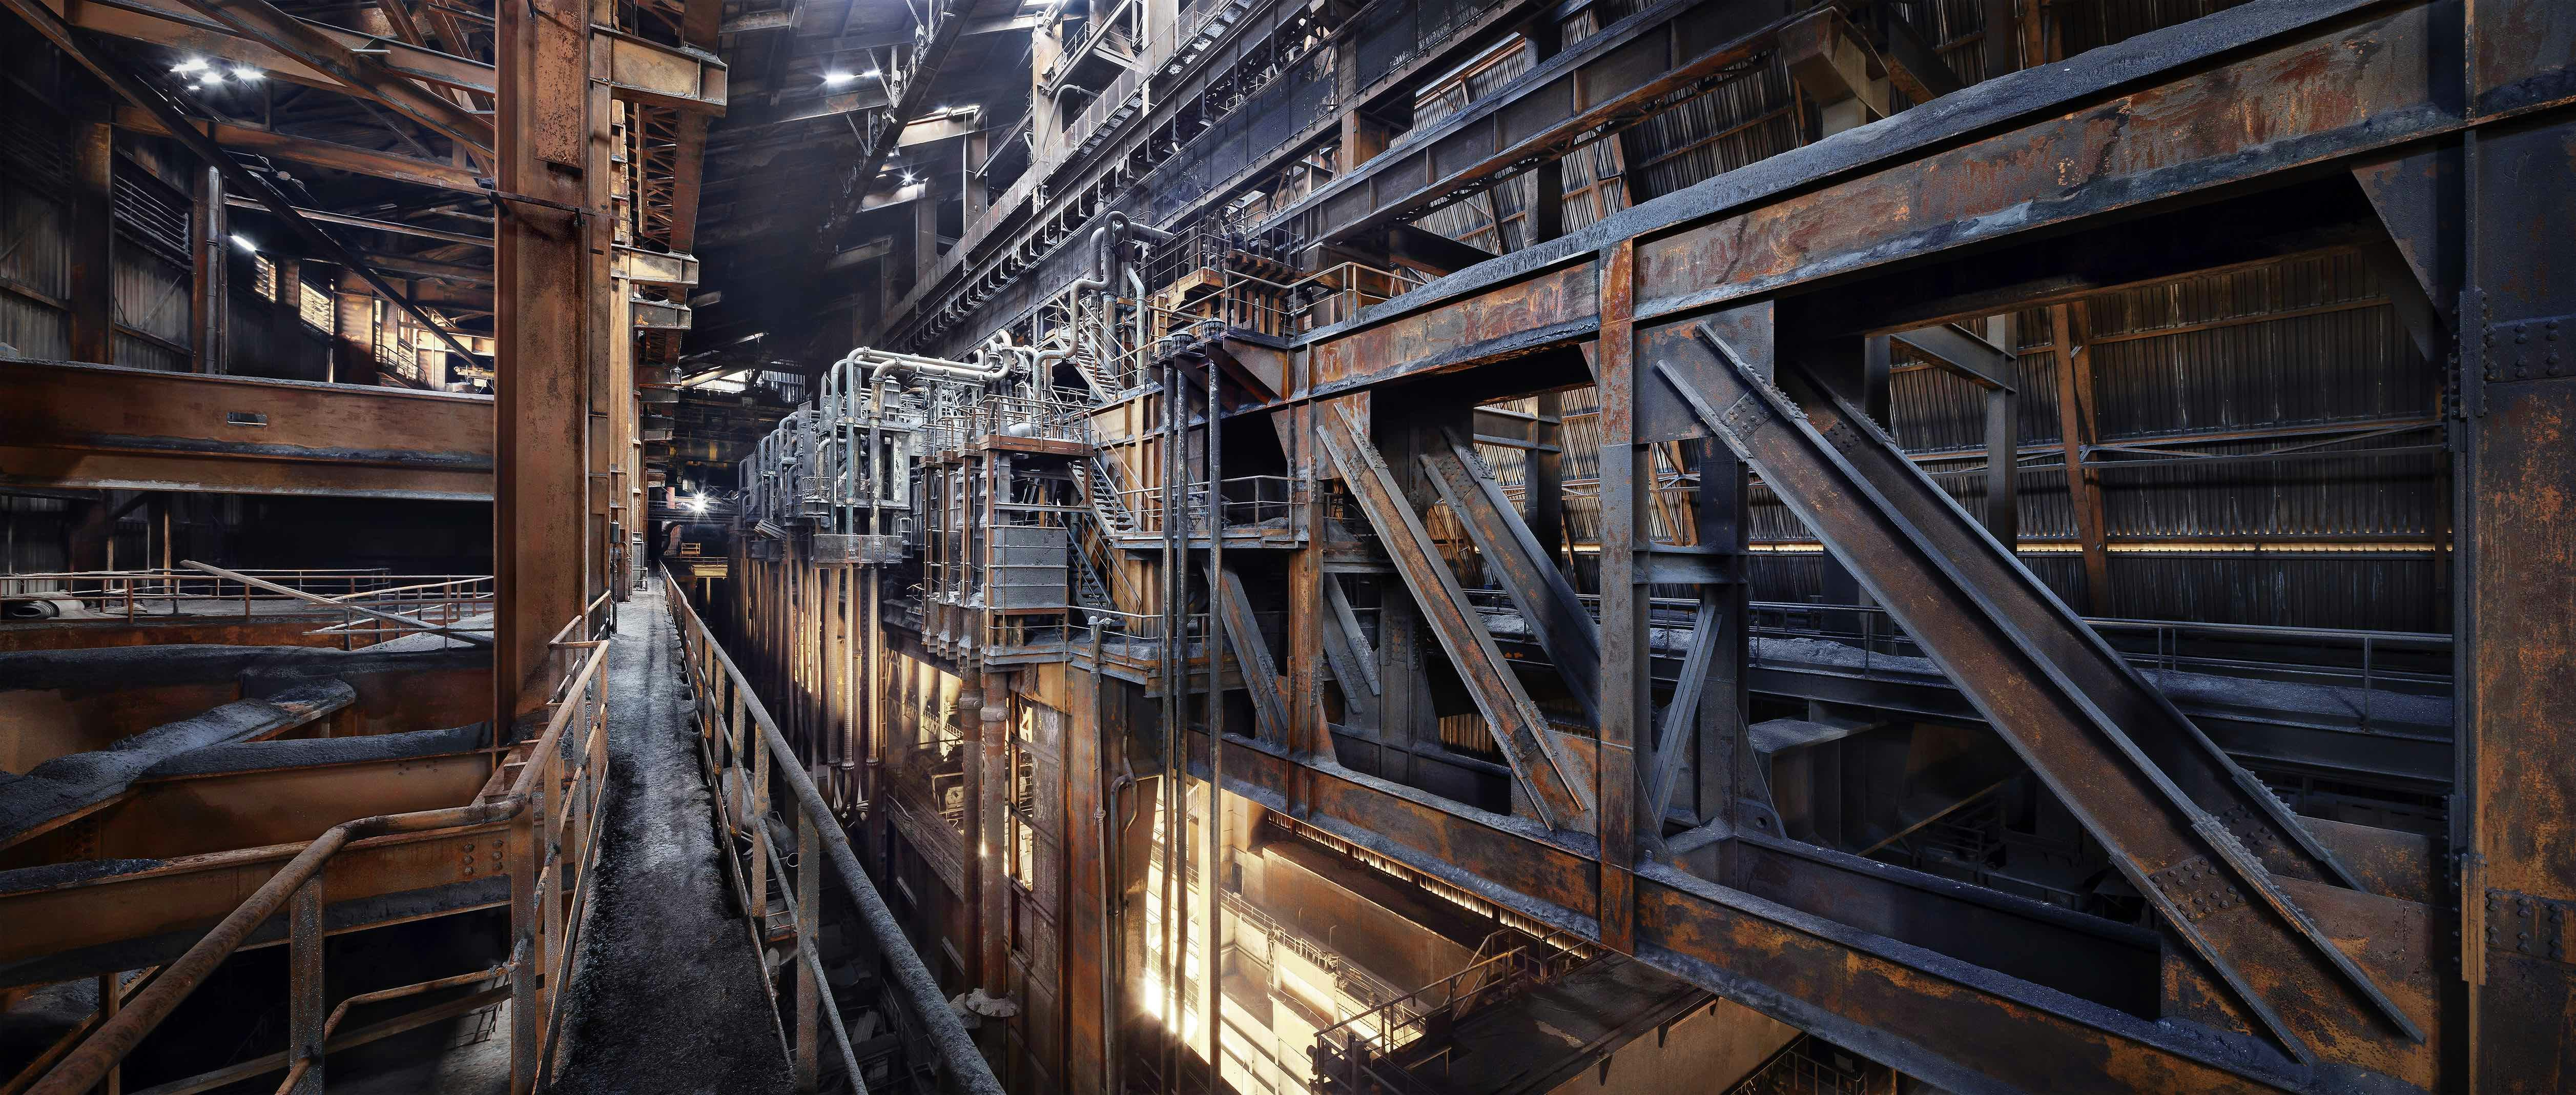 Fotograaf Jan Stel exposeert foto's van verlaten industriële gebouwen